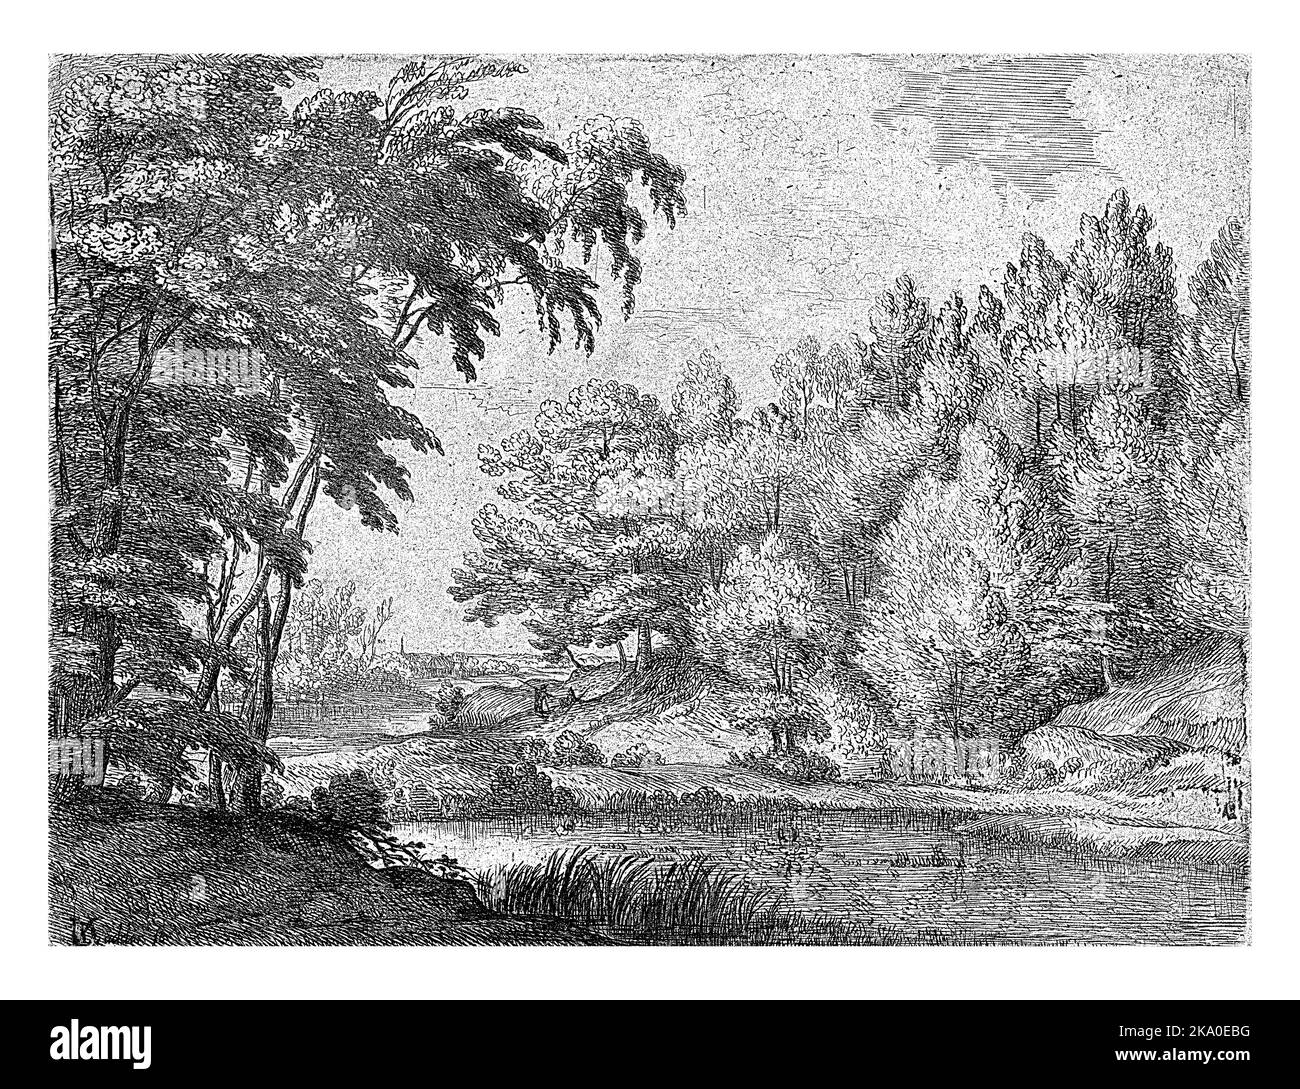 Paesaggio con un fiume serpeggiante, Lodewijk de Vadder, 1615 - 1655 paesaggio boscoso con un fiume serpeggiante, due persone sulla riva, un villaggio nel Foto Stock